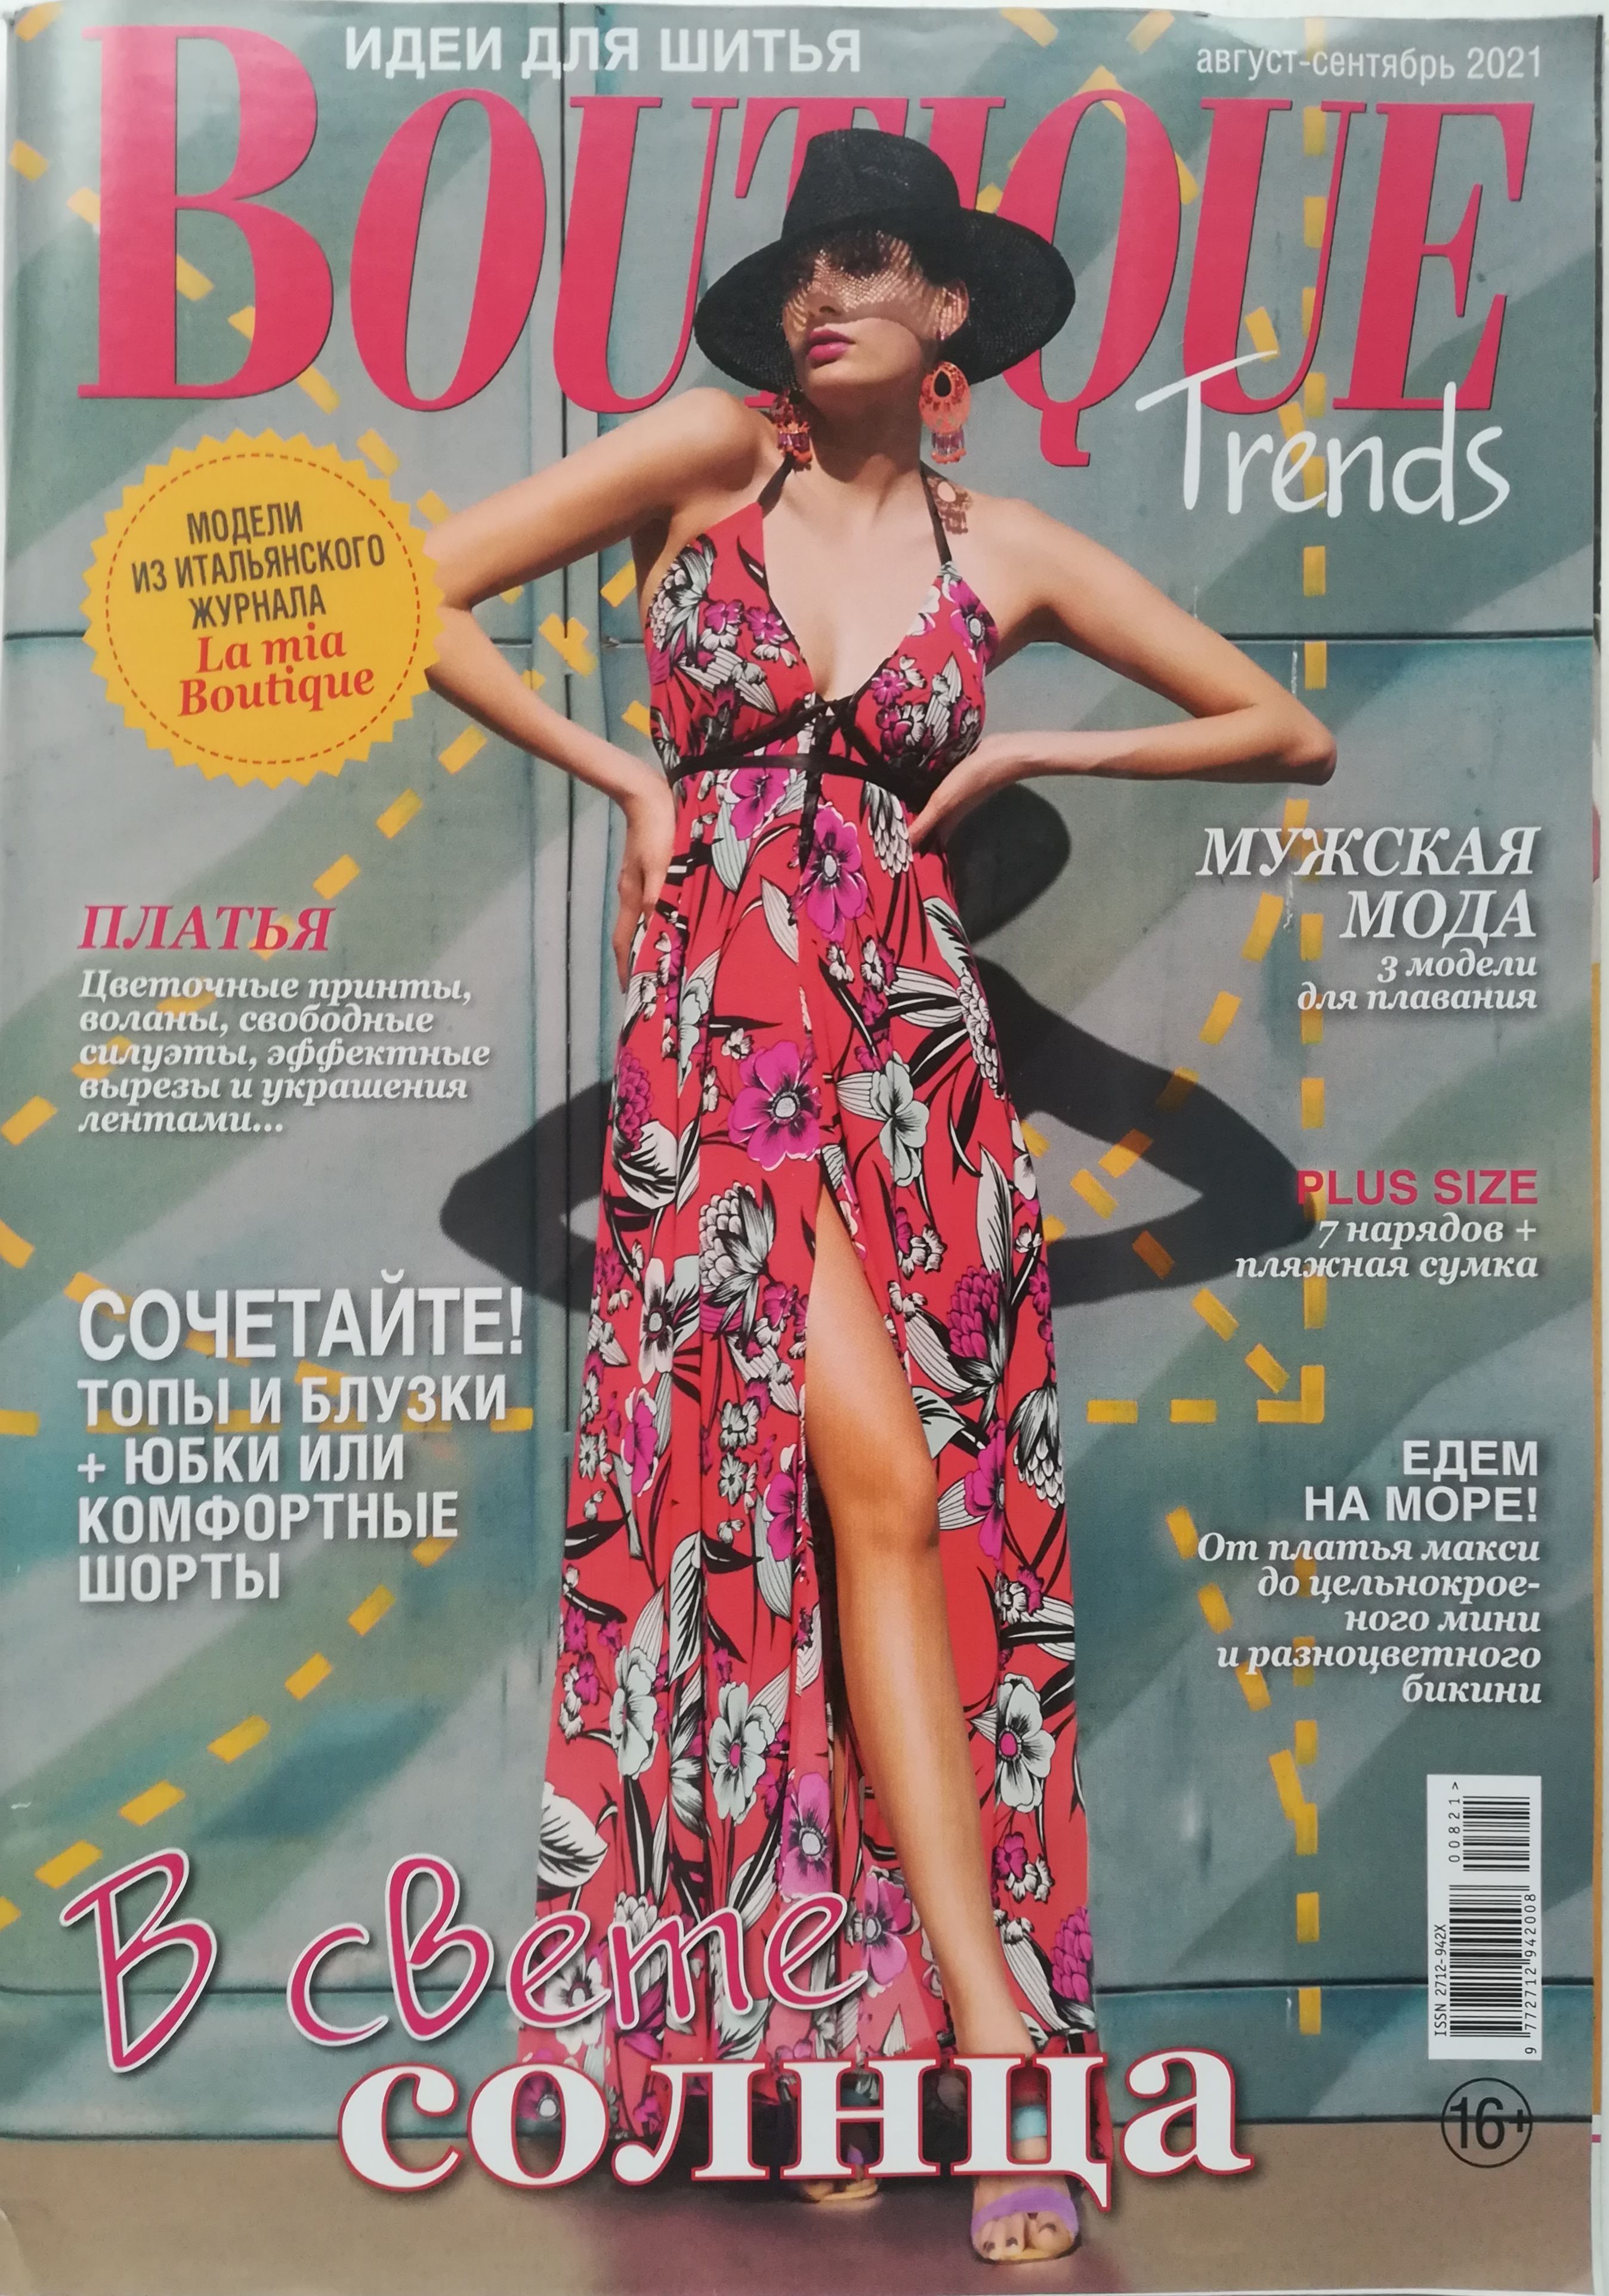 Итальянский журнал boutique. Boutique журнал 2021. Журнал Boutique trends 2021. Итальянские журналы мод. Boutique журнал 2021 июнь.